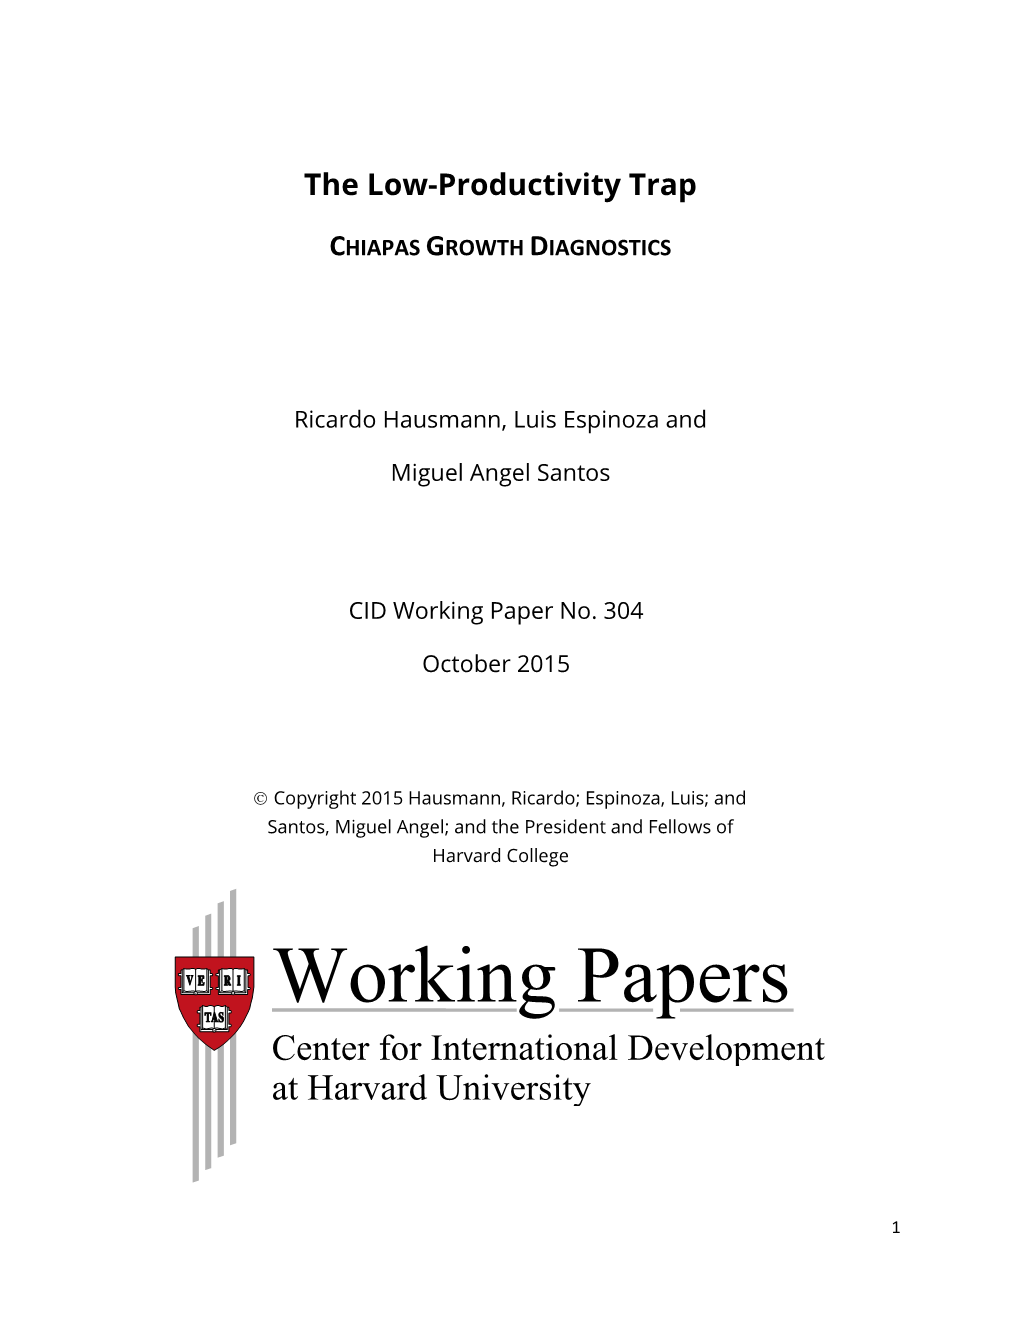 The Low Productivity Trap: Chiapas Growth Diagnostics